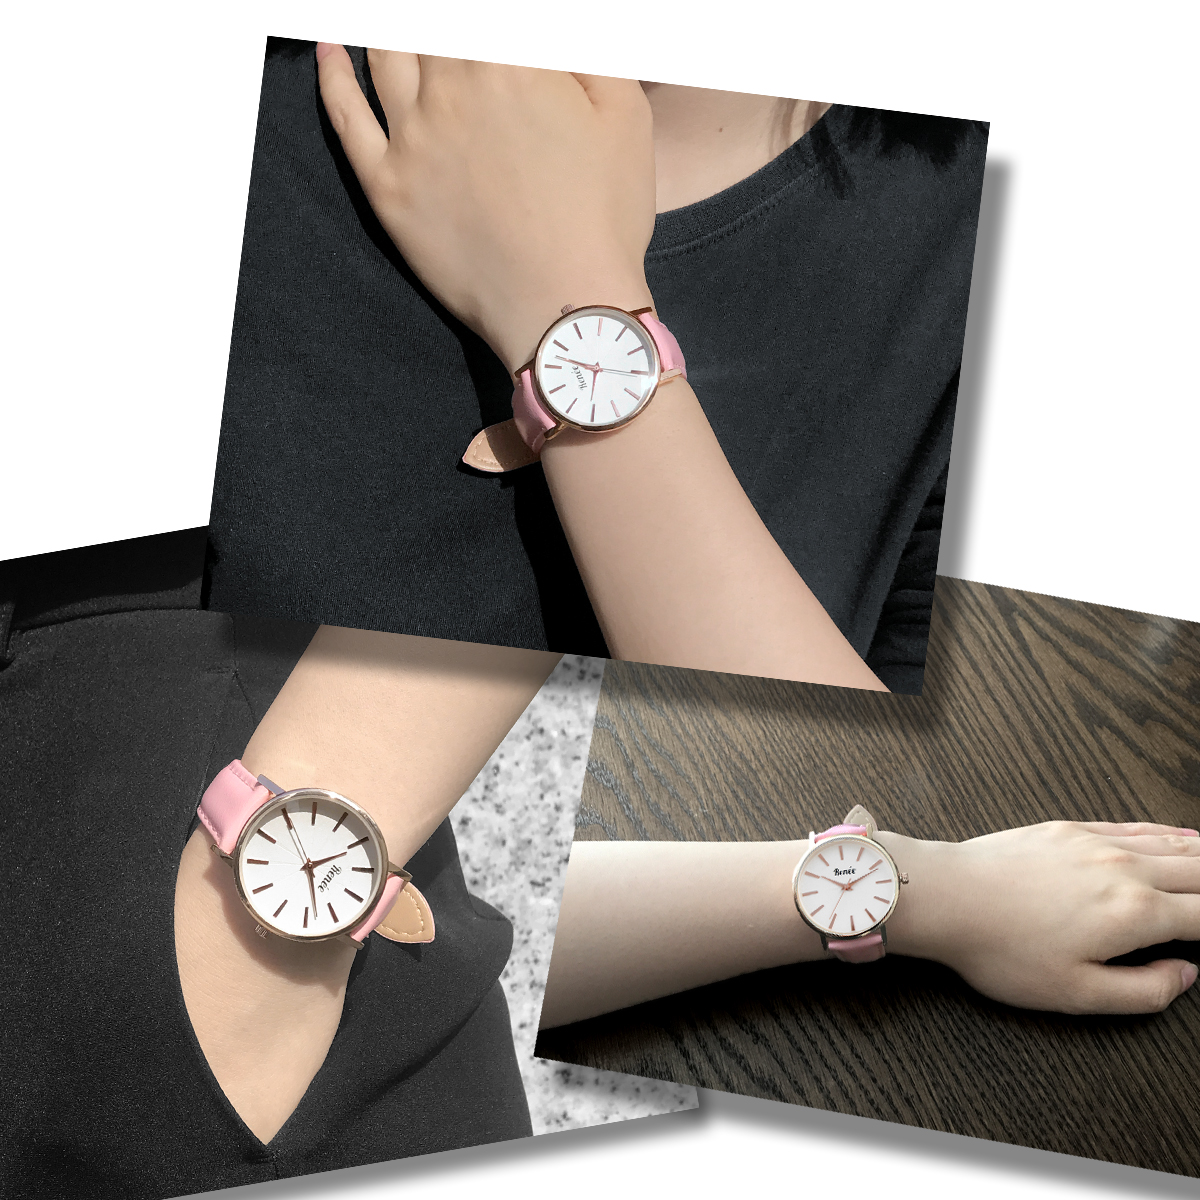 楽天市場 Renee ルネ R02 腕時計 アナログ クォーツウォッチ ブランド おしゃれ 人気 安い かわいい メンズ レディース シンプル 女性 ギフト プレゼント セレクトショップ Number11